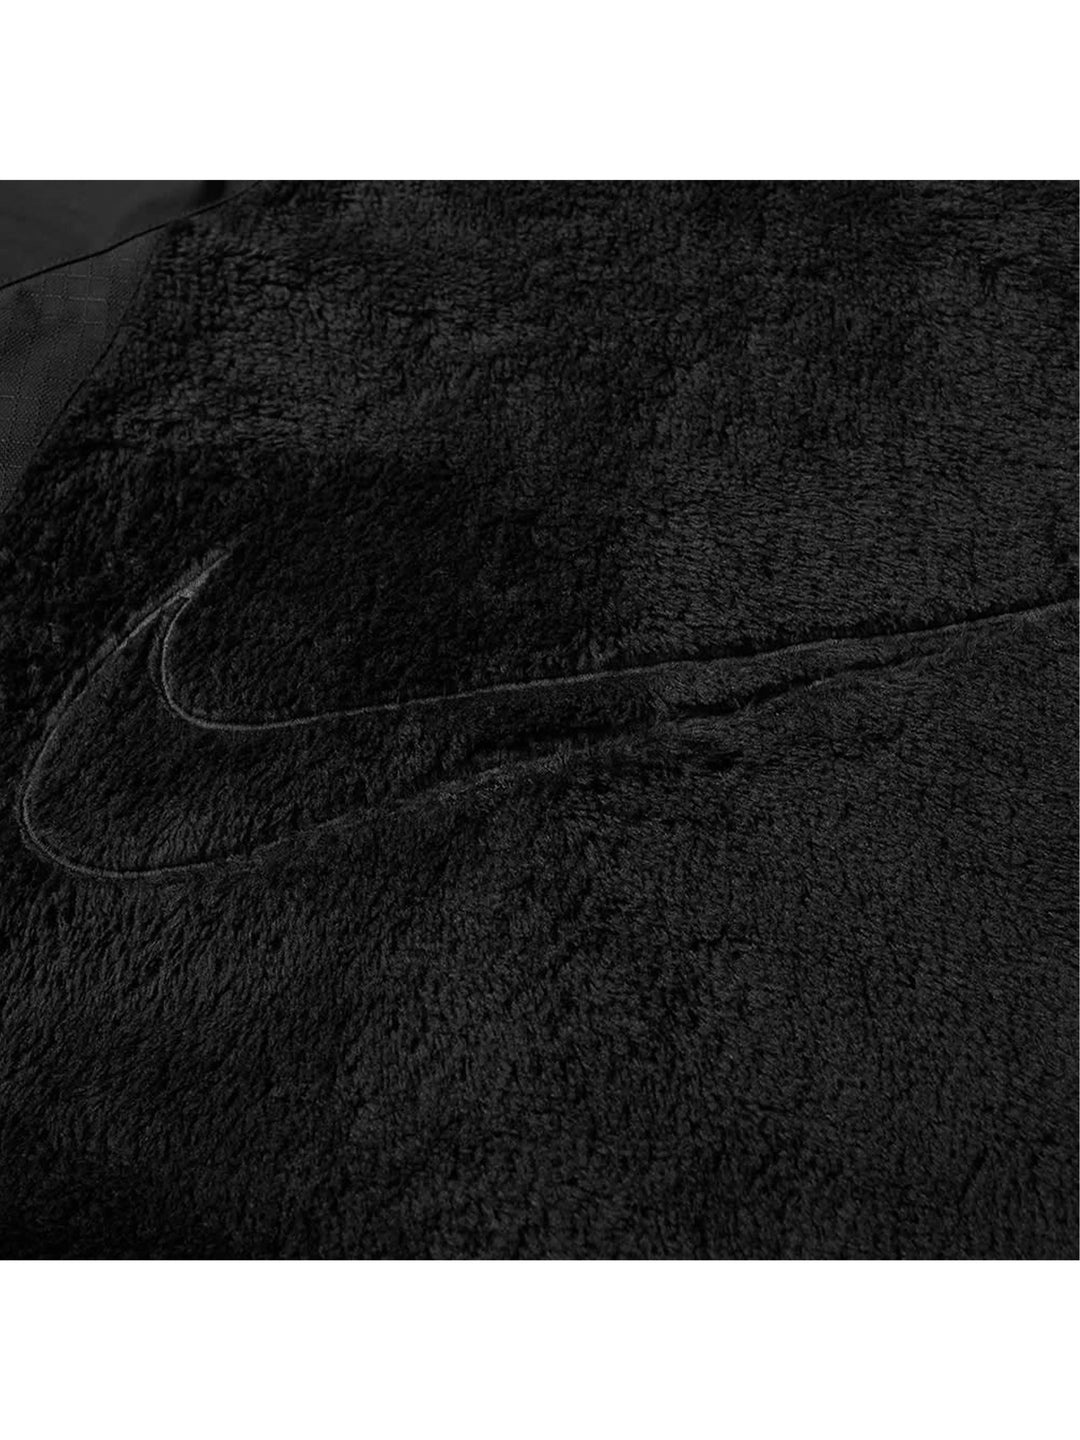 Nike x Drake NOCTA Polar Fleece Jacket Black Prior